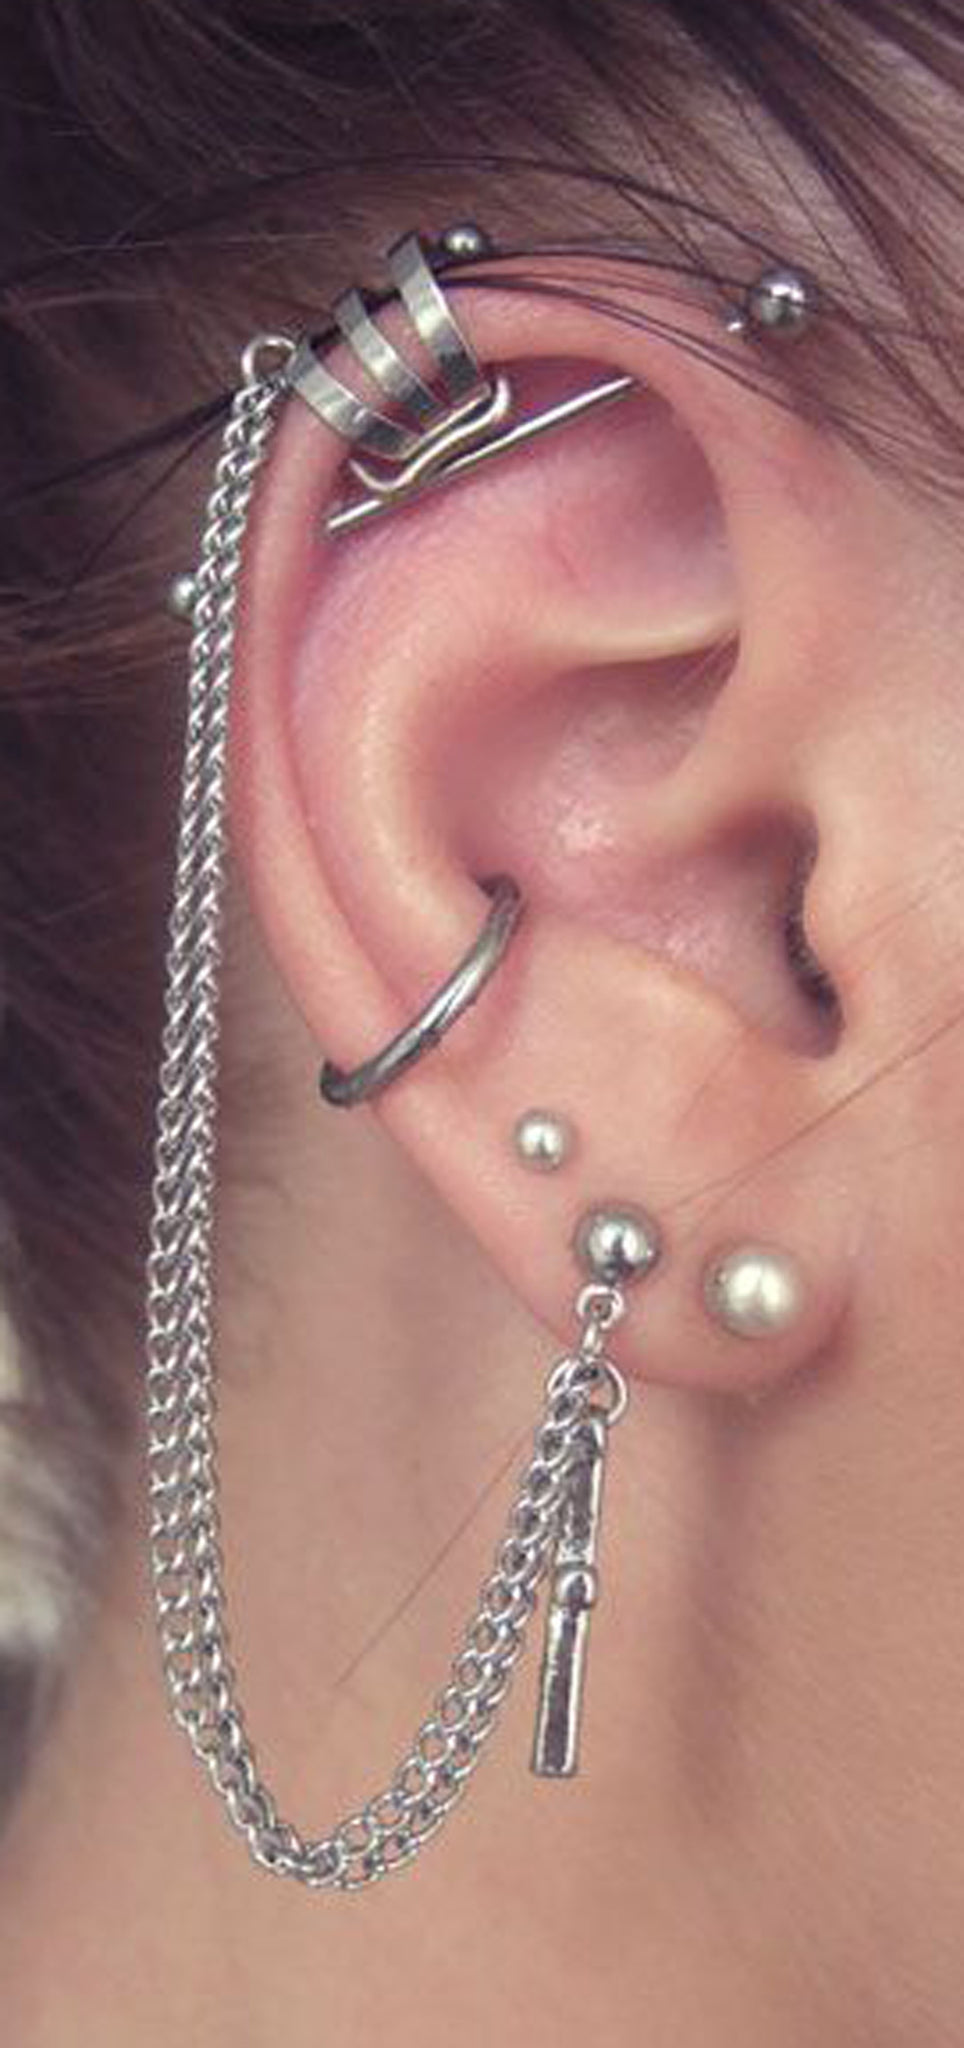 Unique Ear Piercing Ideas Combinations - Chain Ear Cuff Earring in Silver, Conch Ring 16G, Earrings